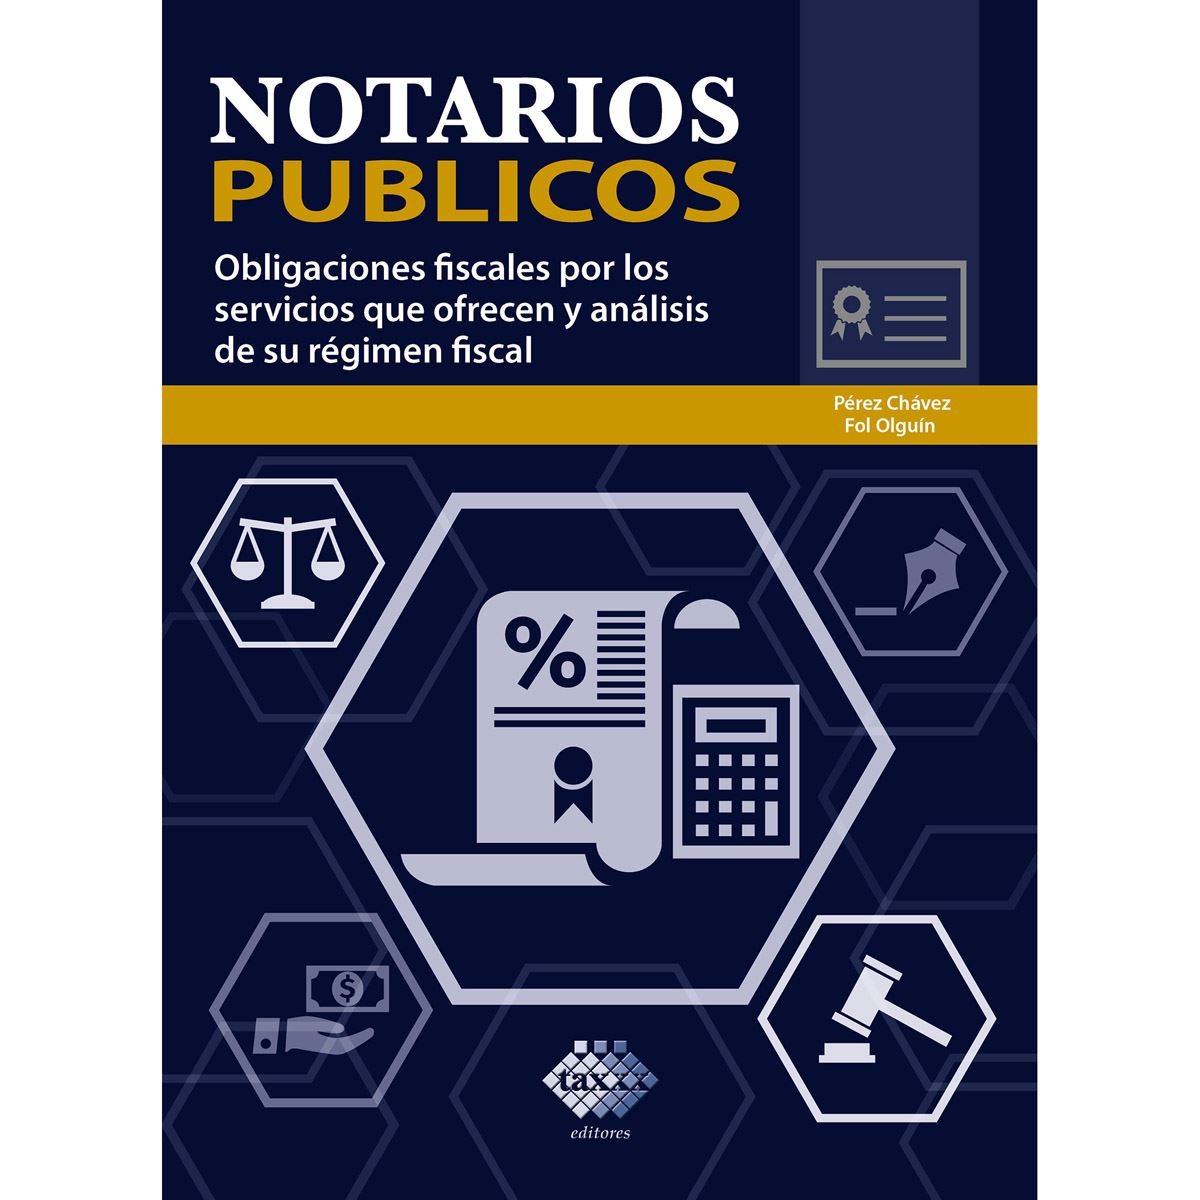 Notarios públicos. Obligaciones fiscales por los servicios que ofrecen y análisis de su régimen fiscal